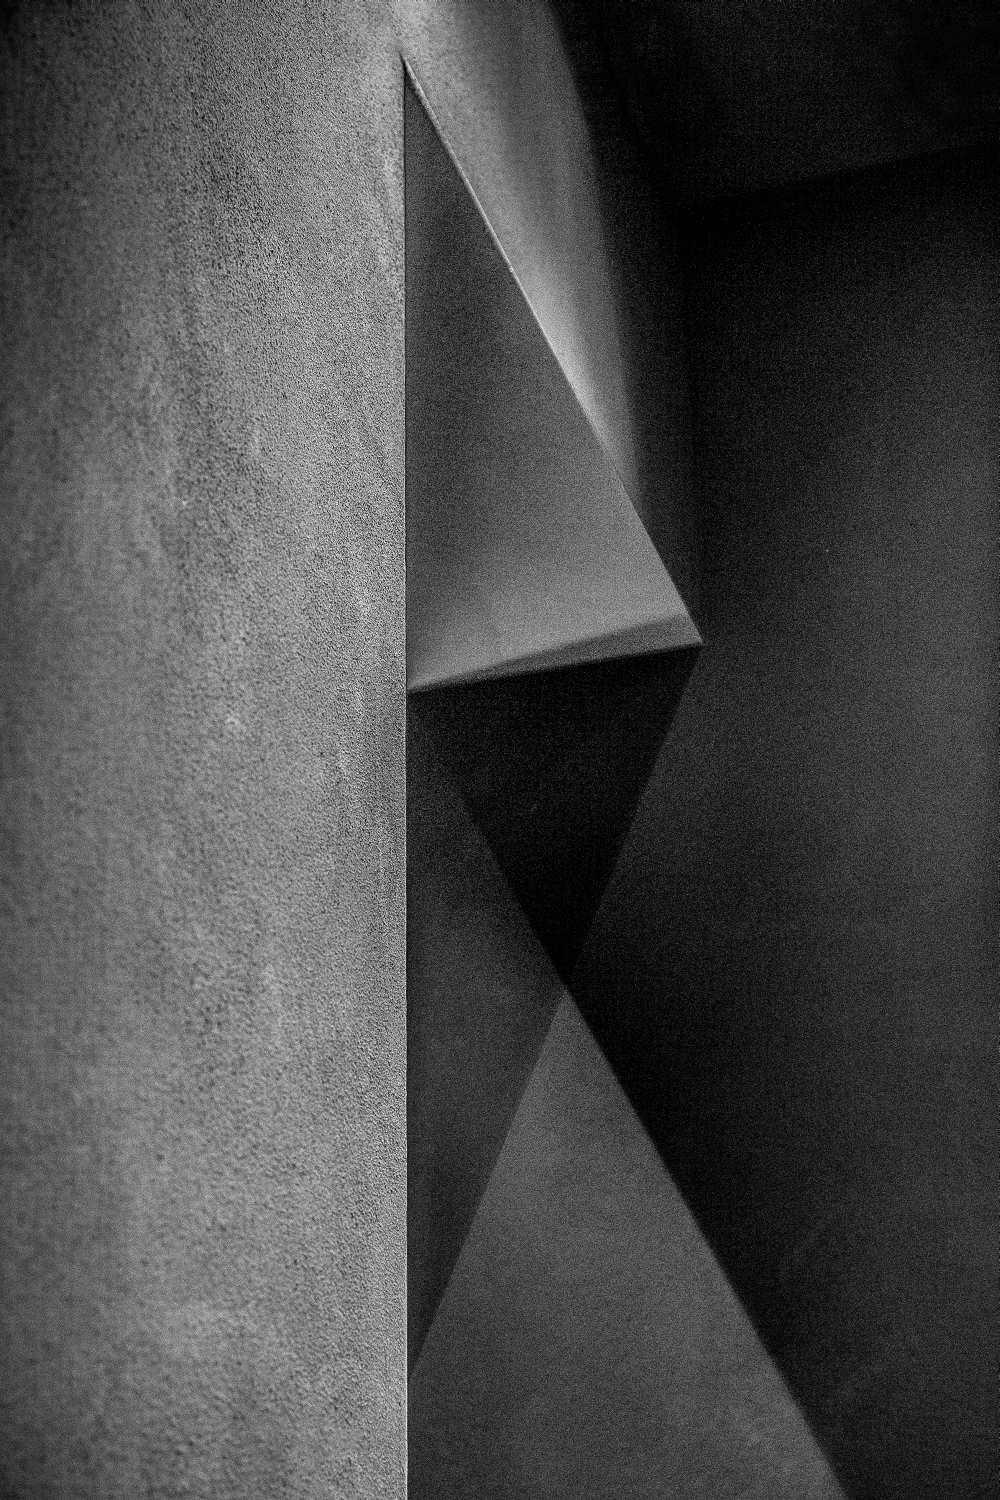 Grey shadows de Inge Schuster